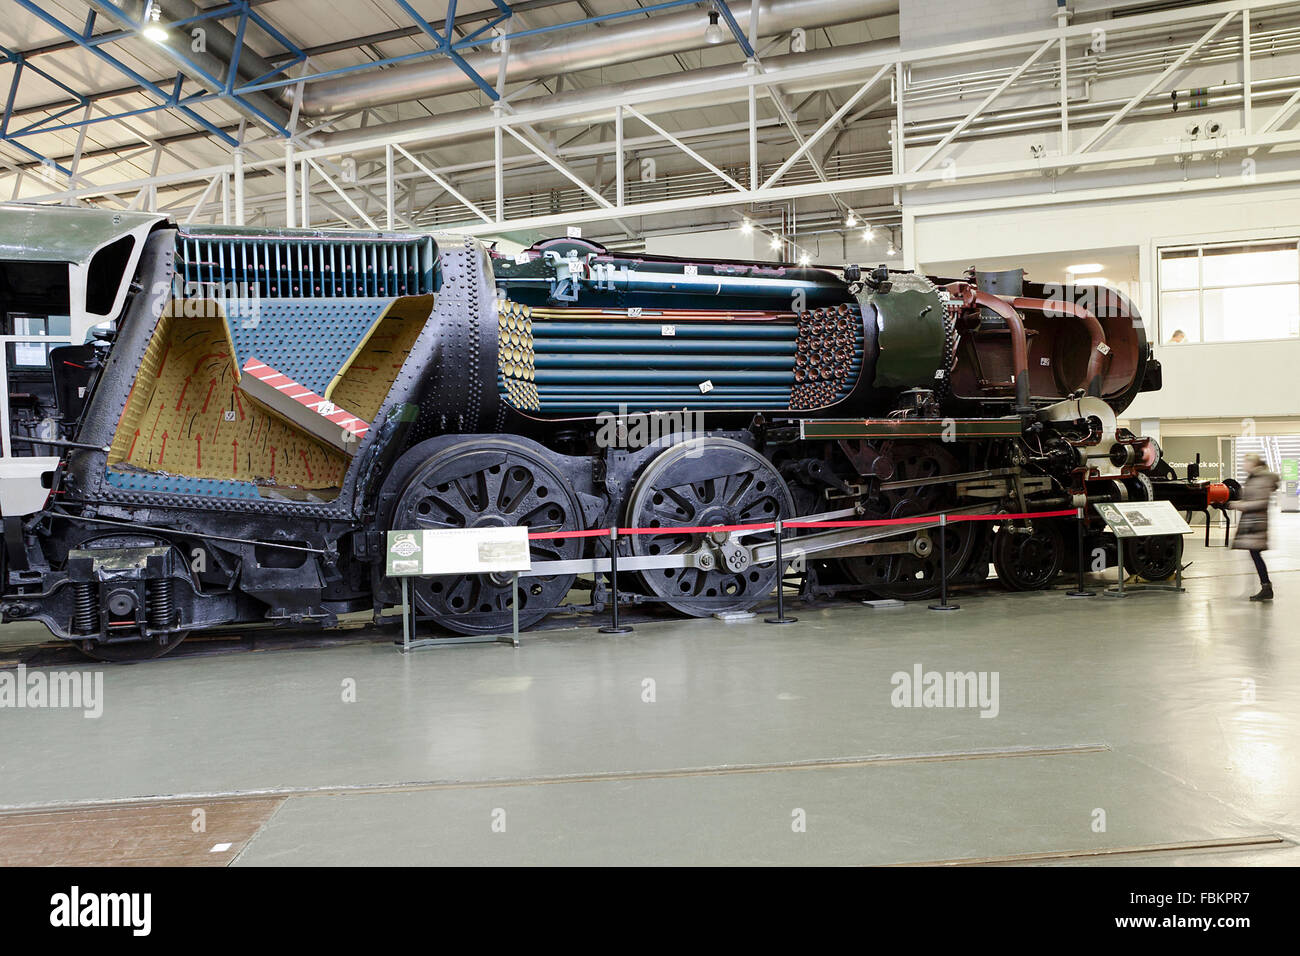 Images de locomotion historique moderne de jour, les locomotives et les merveilles de l'ingénierie aux niveaux national Railway Museum, York, Royaume-Uni. Banque D'Images